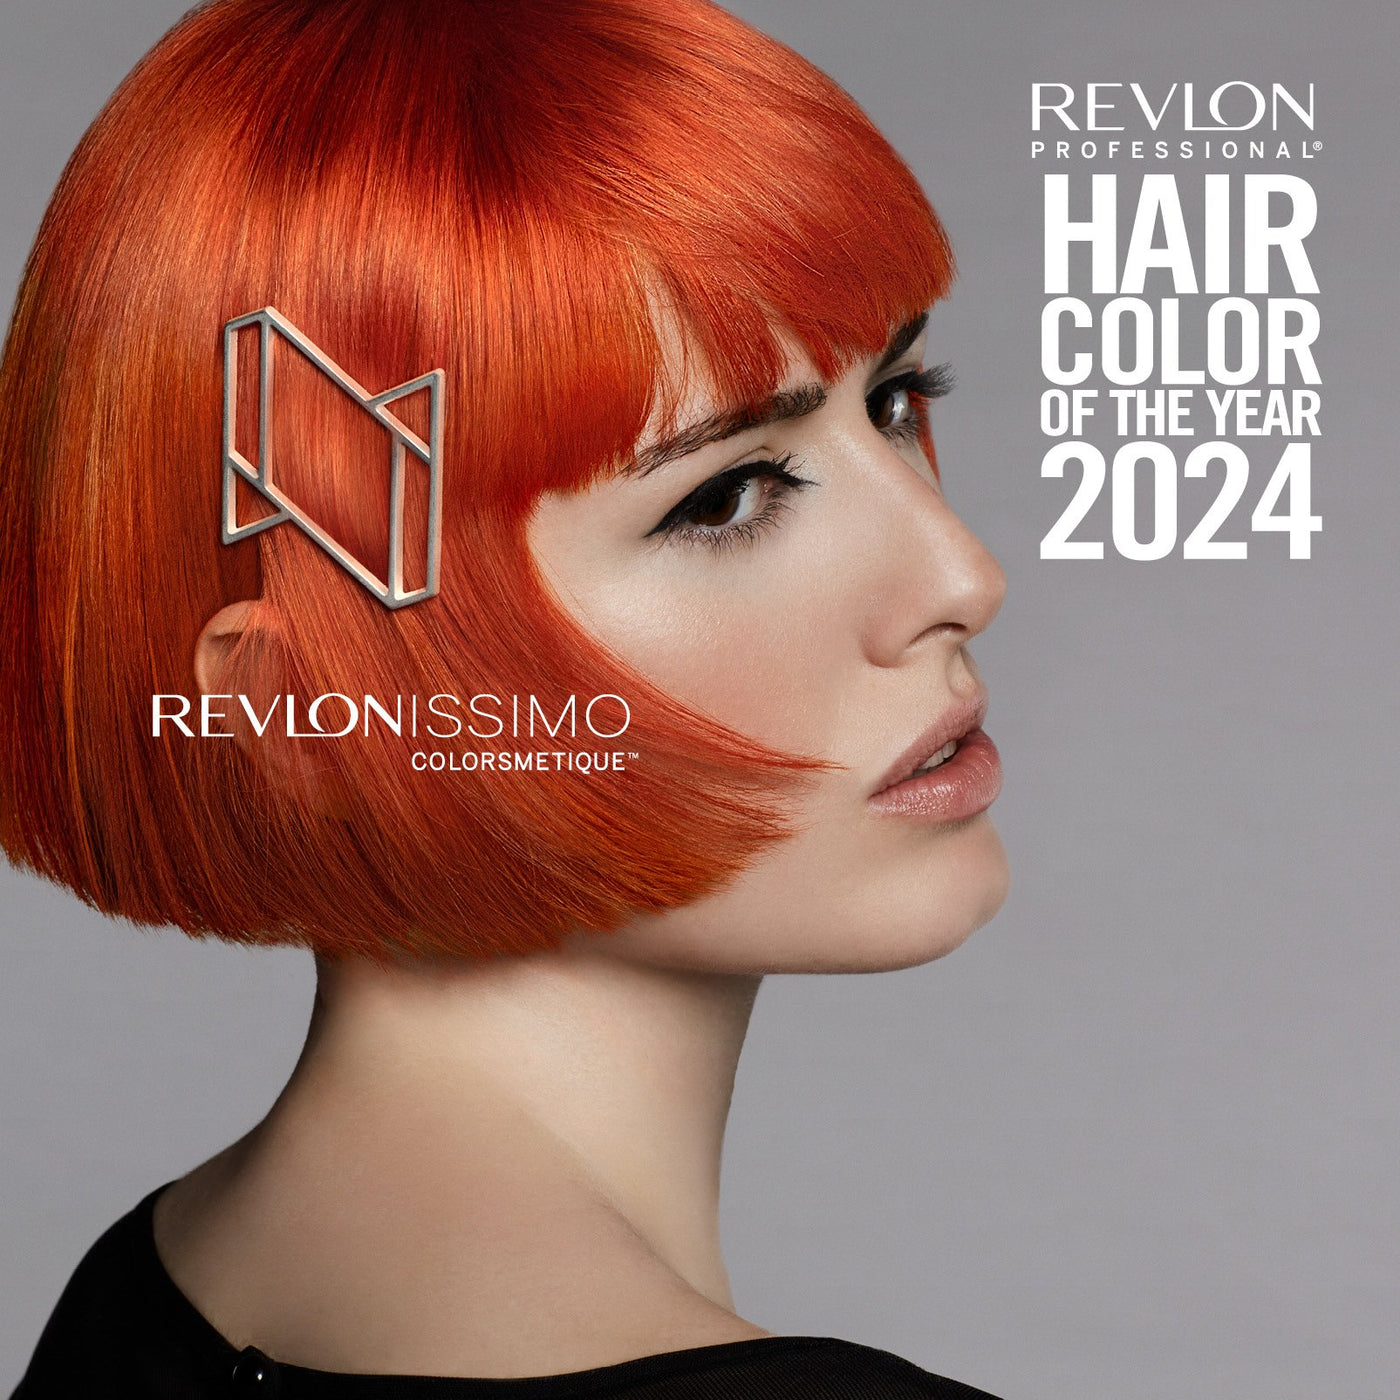 Revlonissimo Colorsmetique™ Permanent Hair Color Naturals